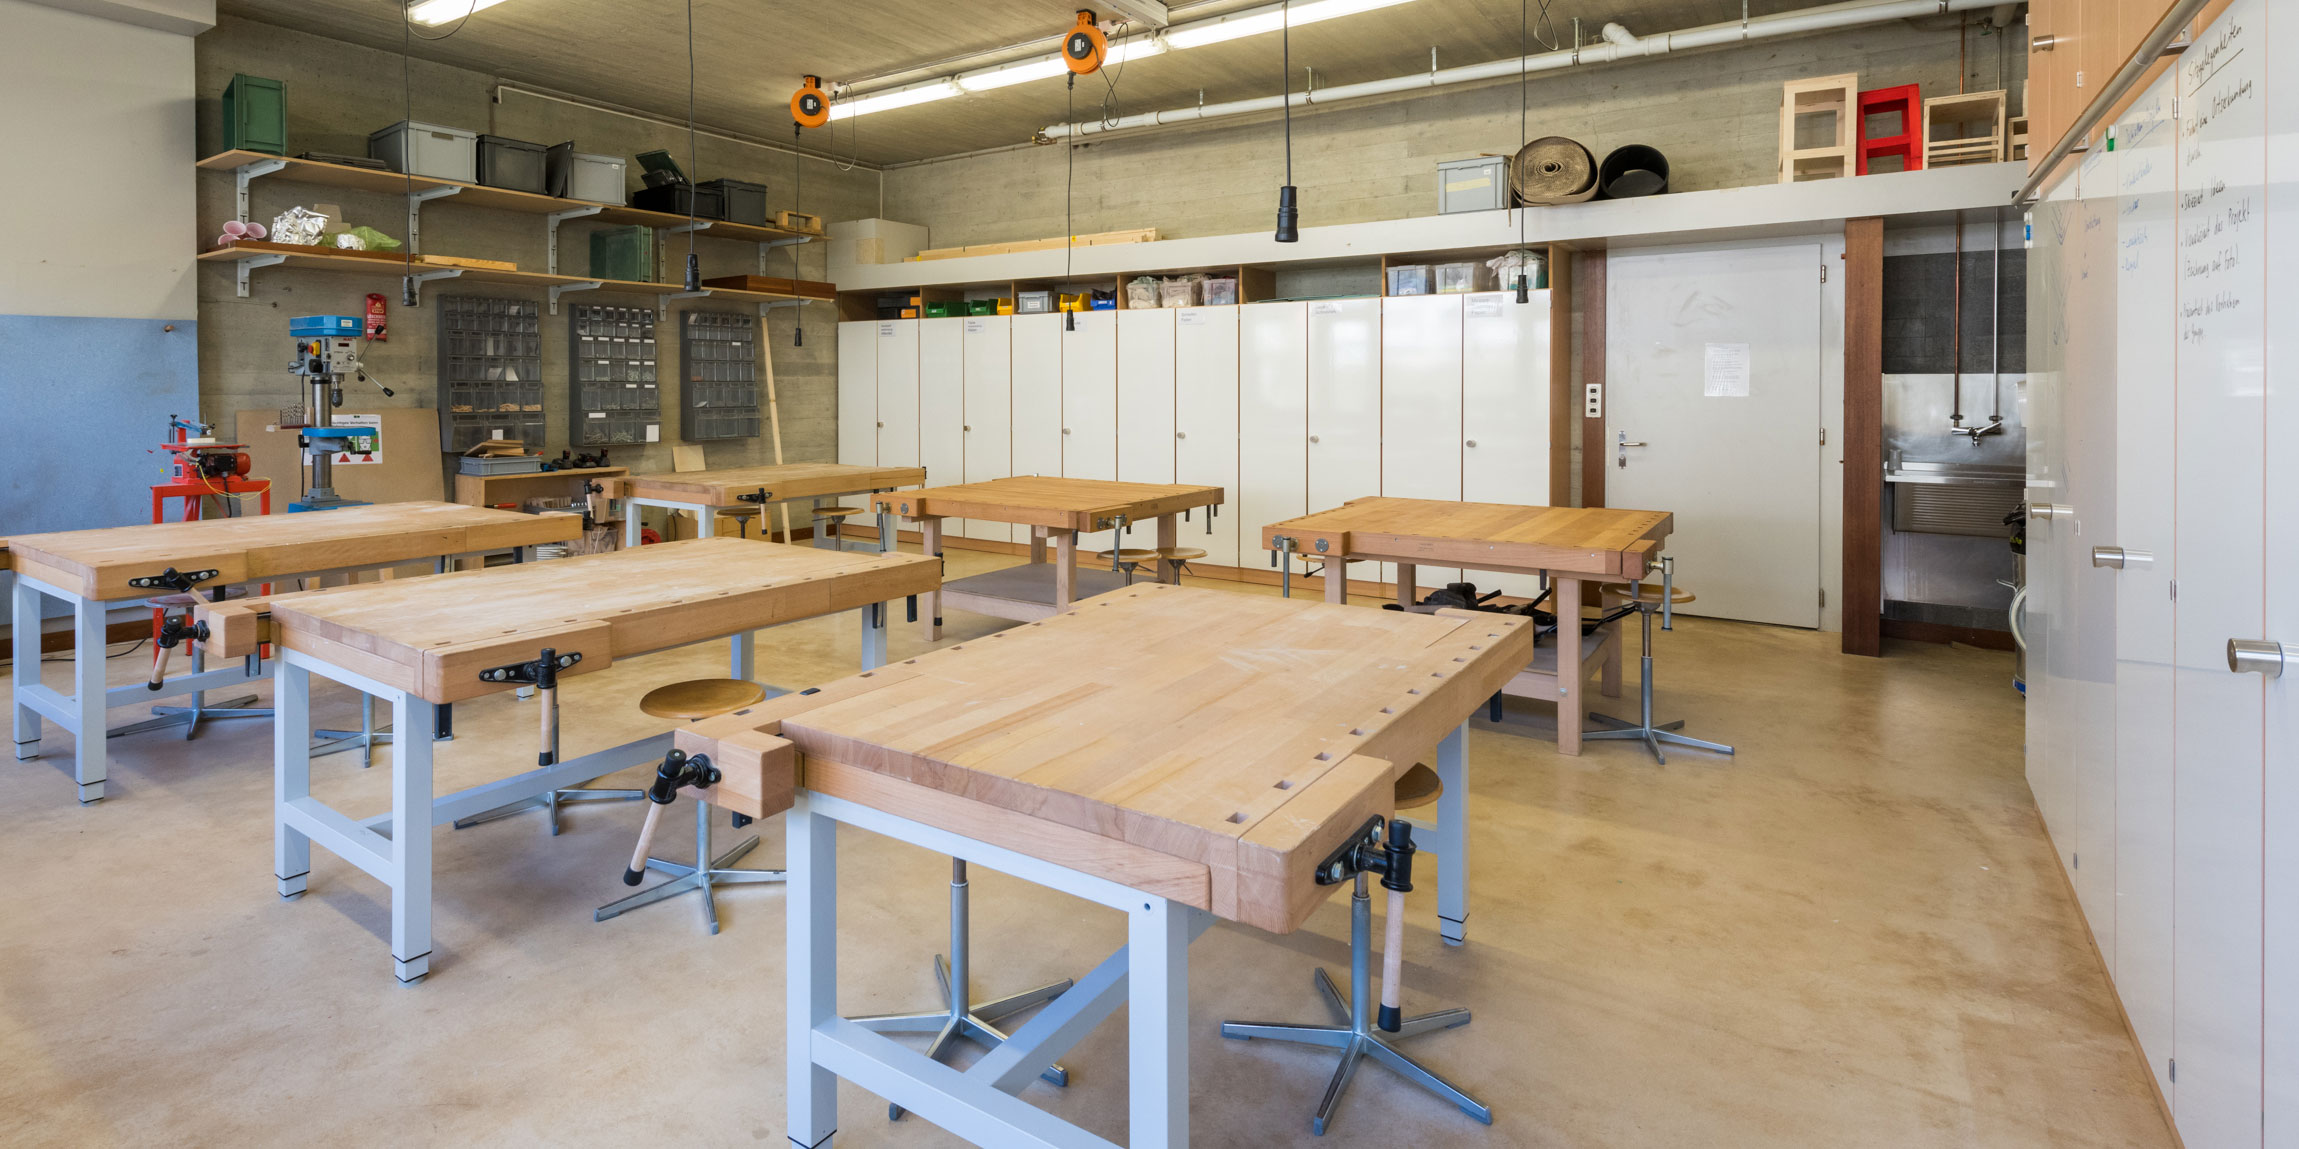 <p>Während der Ferienpause sollten die alten Werkräume in der Schule Hallwyler in Brugg (AG) renoviert werden. Gewünscht war eine moderne, massgefertigte Lösung. Erfahren Sie mehr darüber, wie wir die Schule von der Planung bis zur fertigen Einrichtung ihrer neuen Metall– und Holzwerkstatt unterstützen konnten.</p>